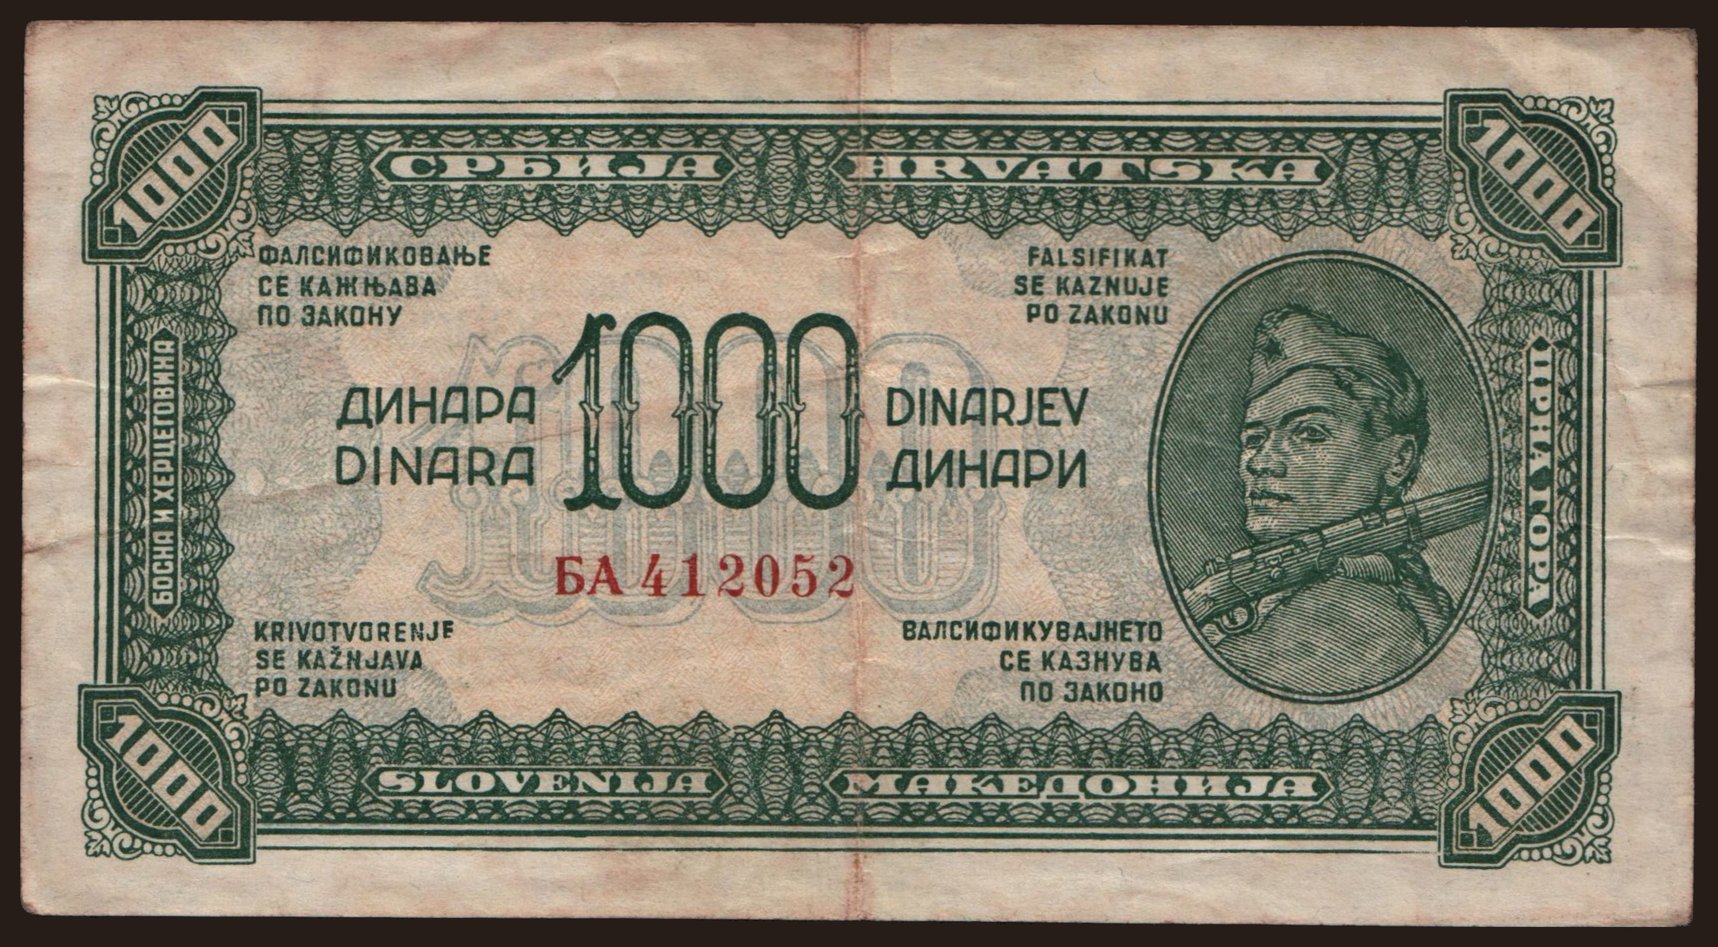 1000 dinara, 1944